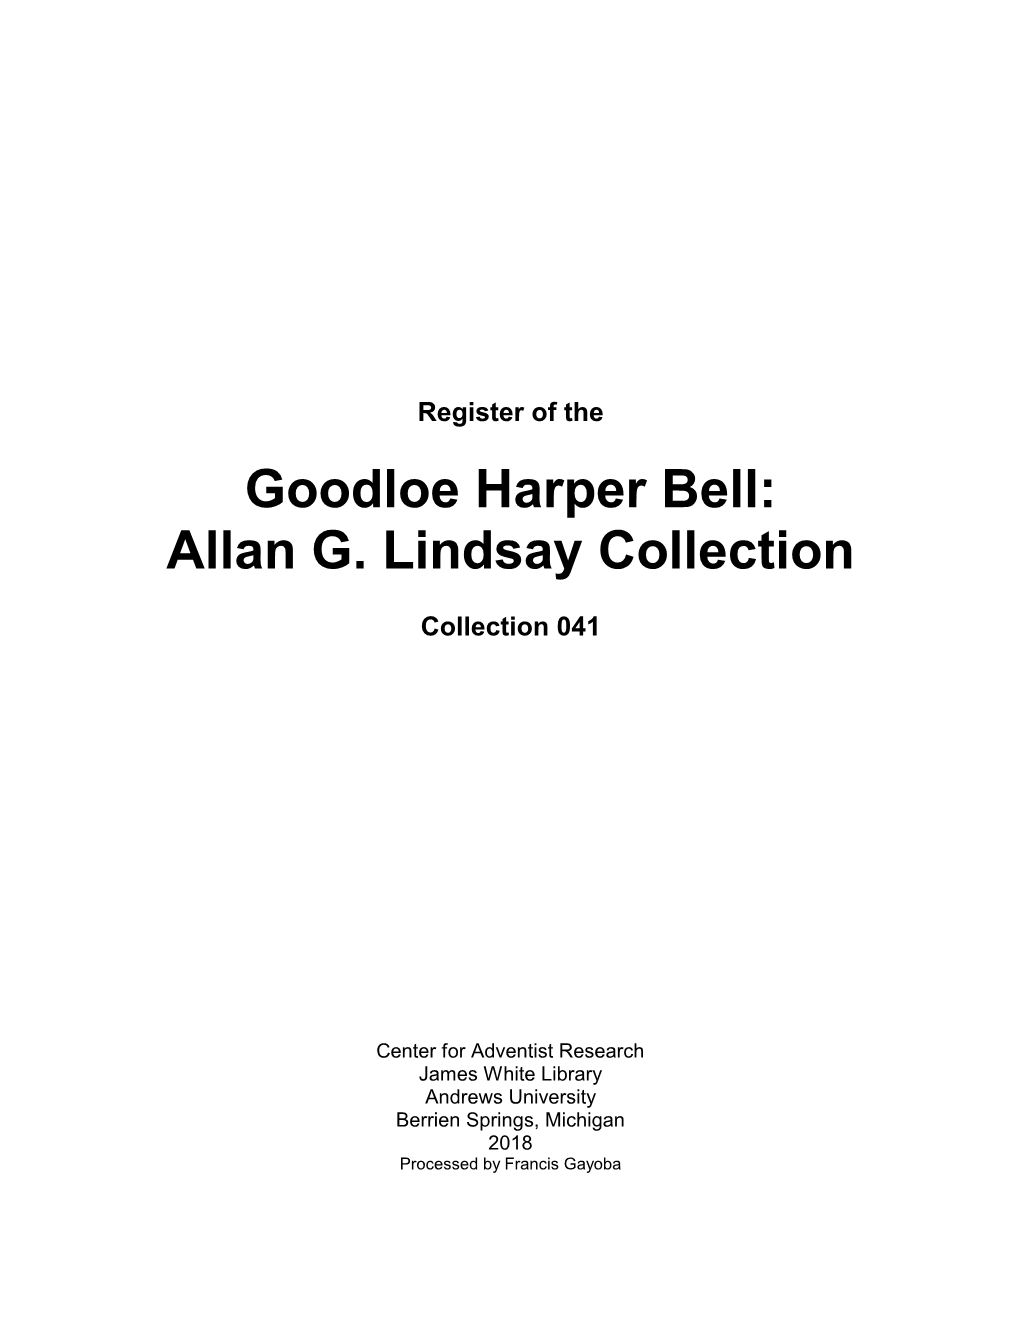 Goodloe Harper Bell: Allan G